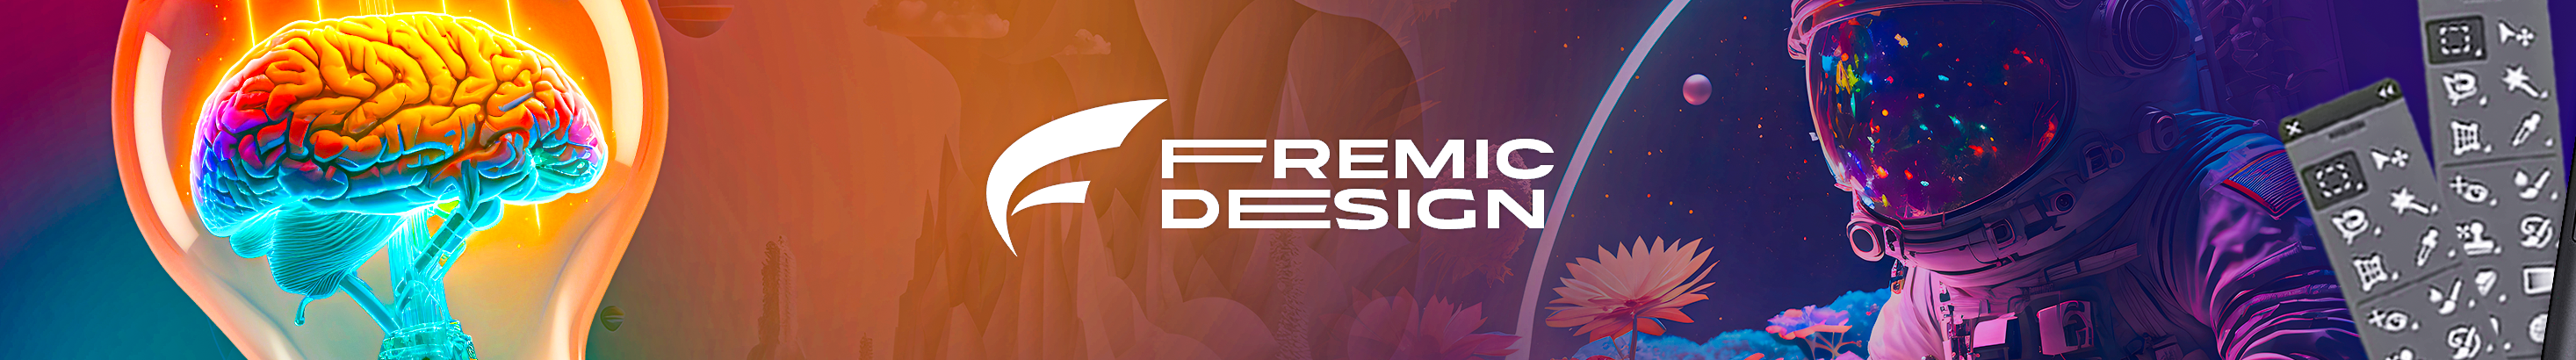 Baner profilu użytkownika Fremic Design